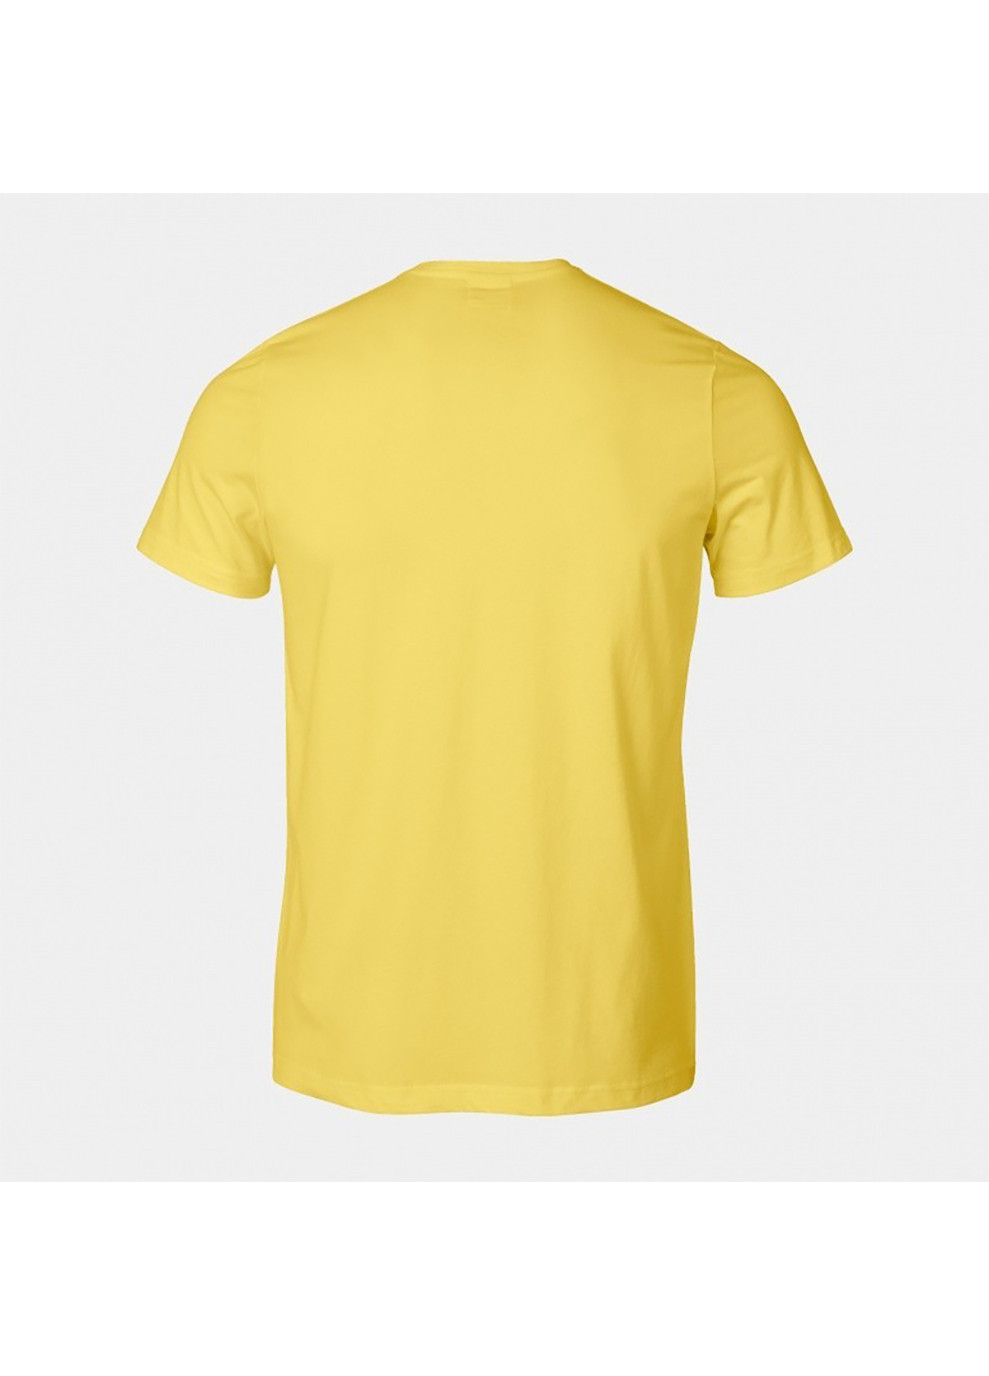 Жовта футболка versalles short sleeve t-shirt жовтий Joma